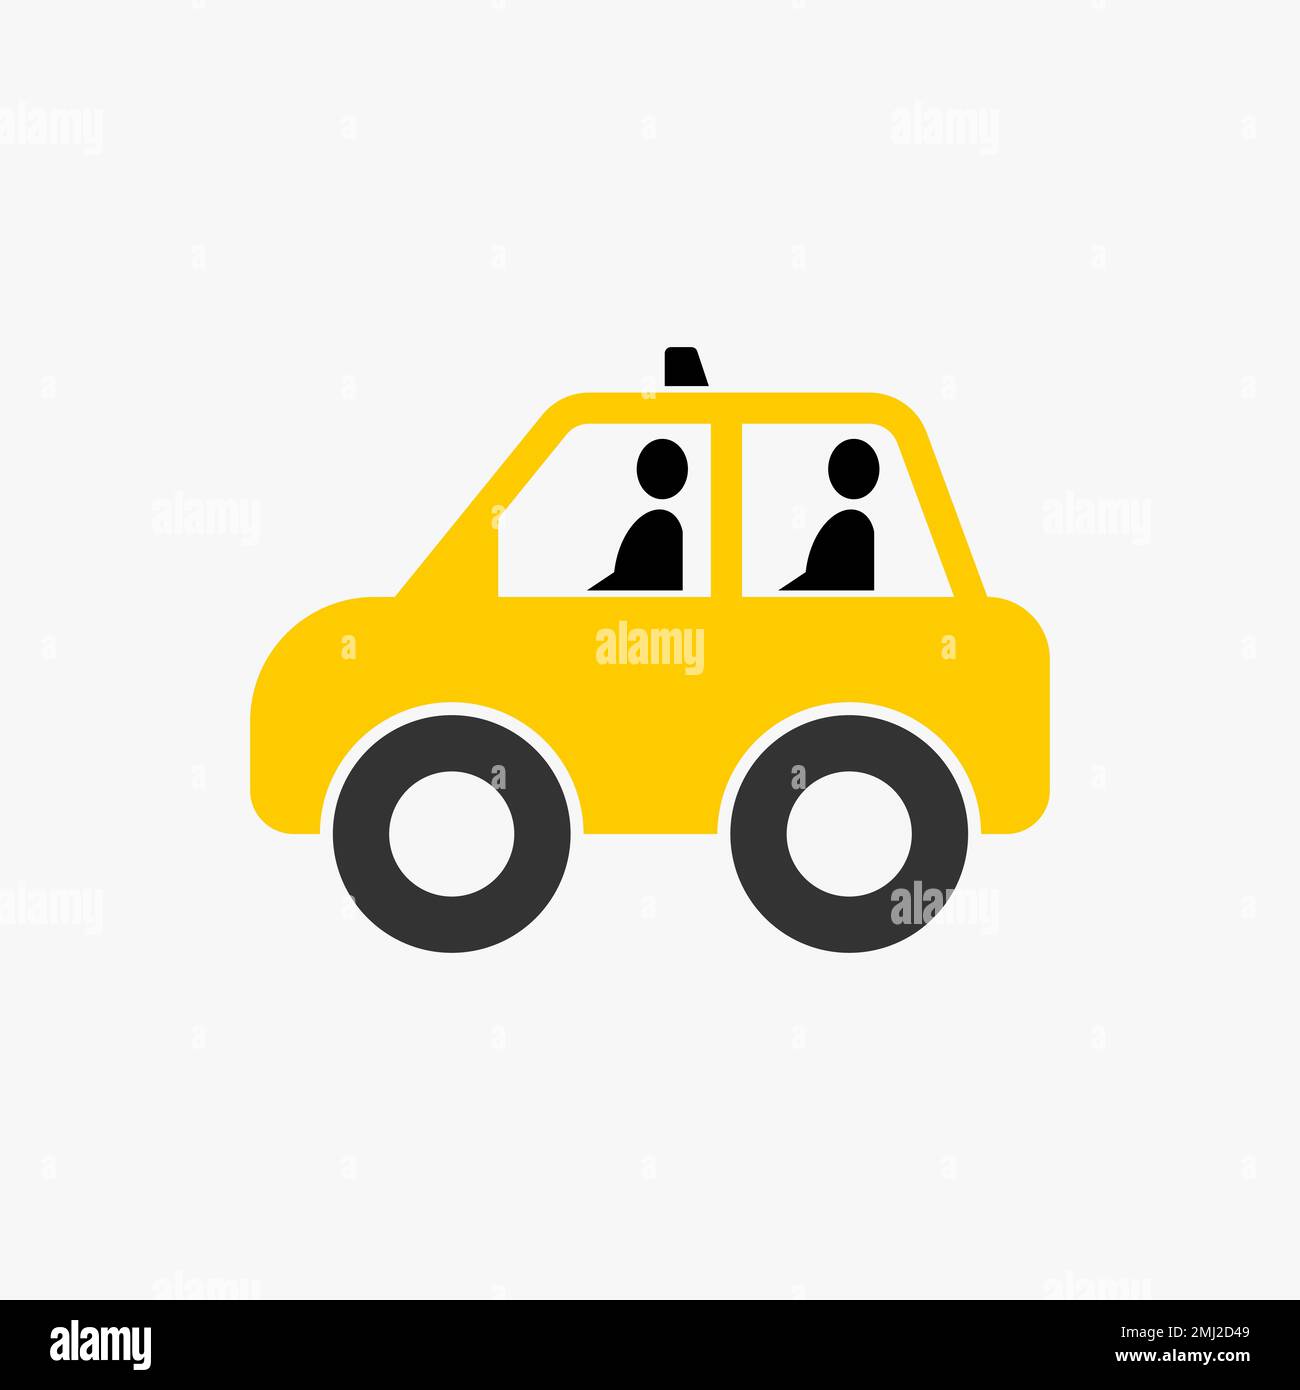 Semplice ed unico mini taxi con due o quattro passeggeri grafica icona logo design astratto concetto vettore stock trasporto o mobile Illustrazione Vettoriale